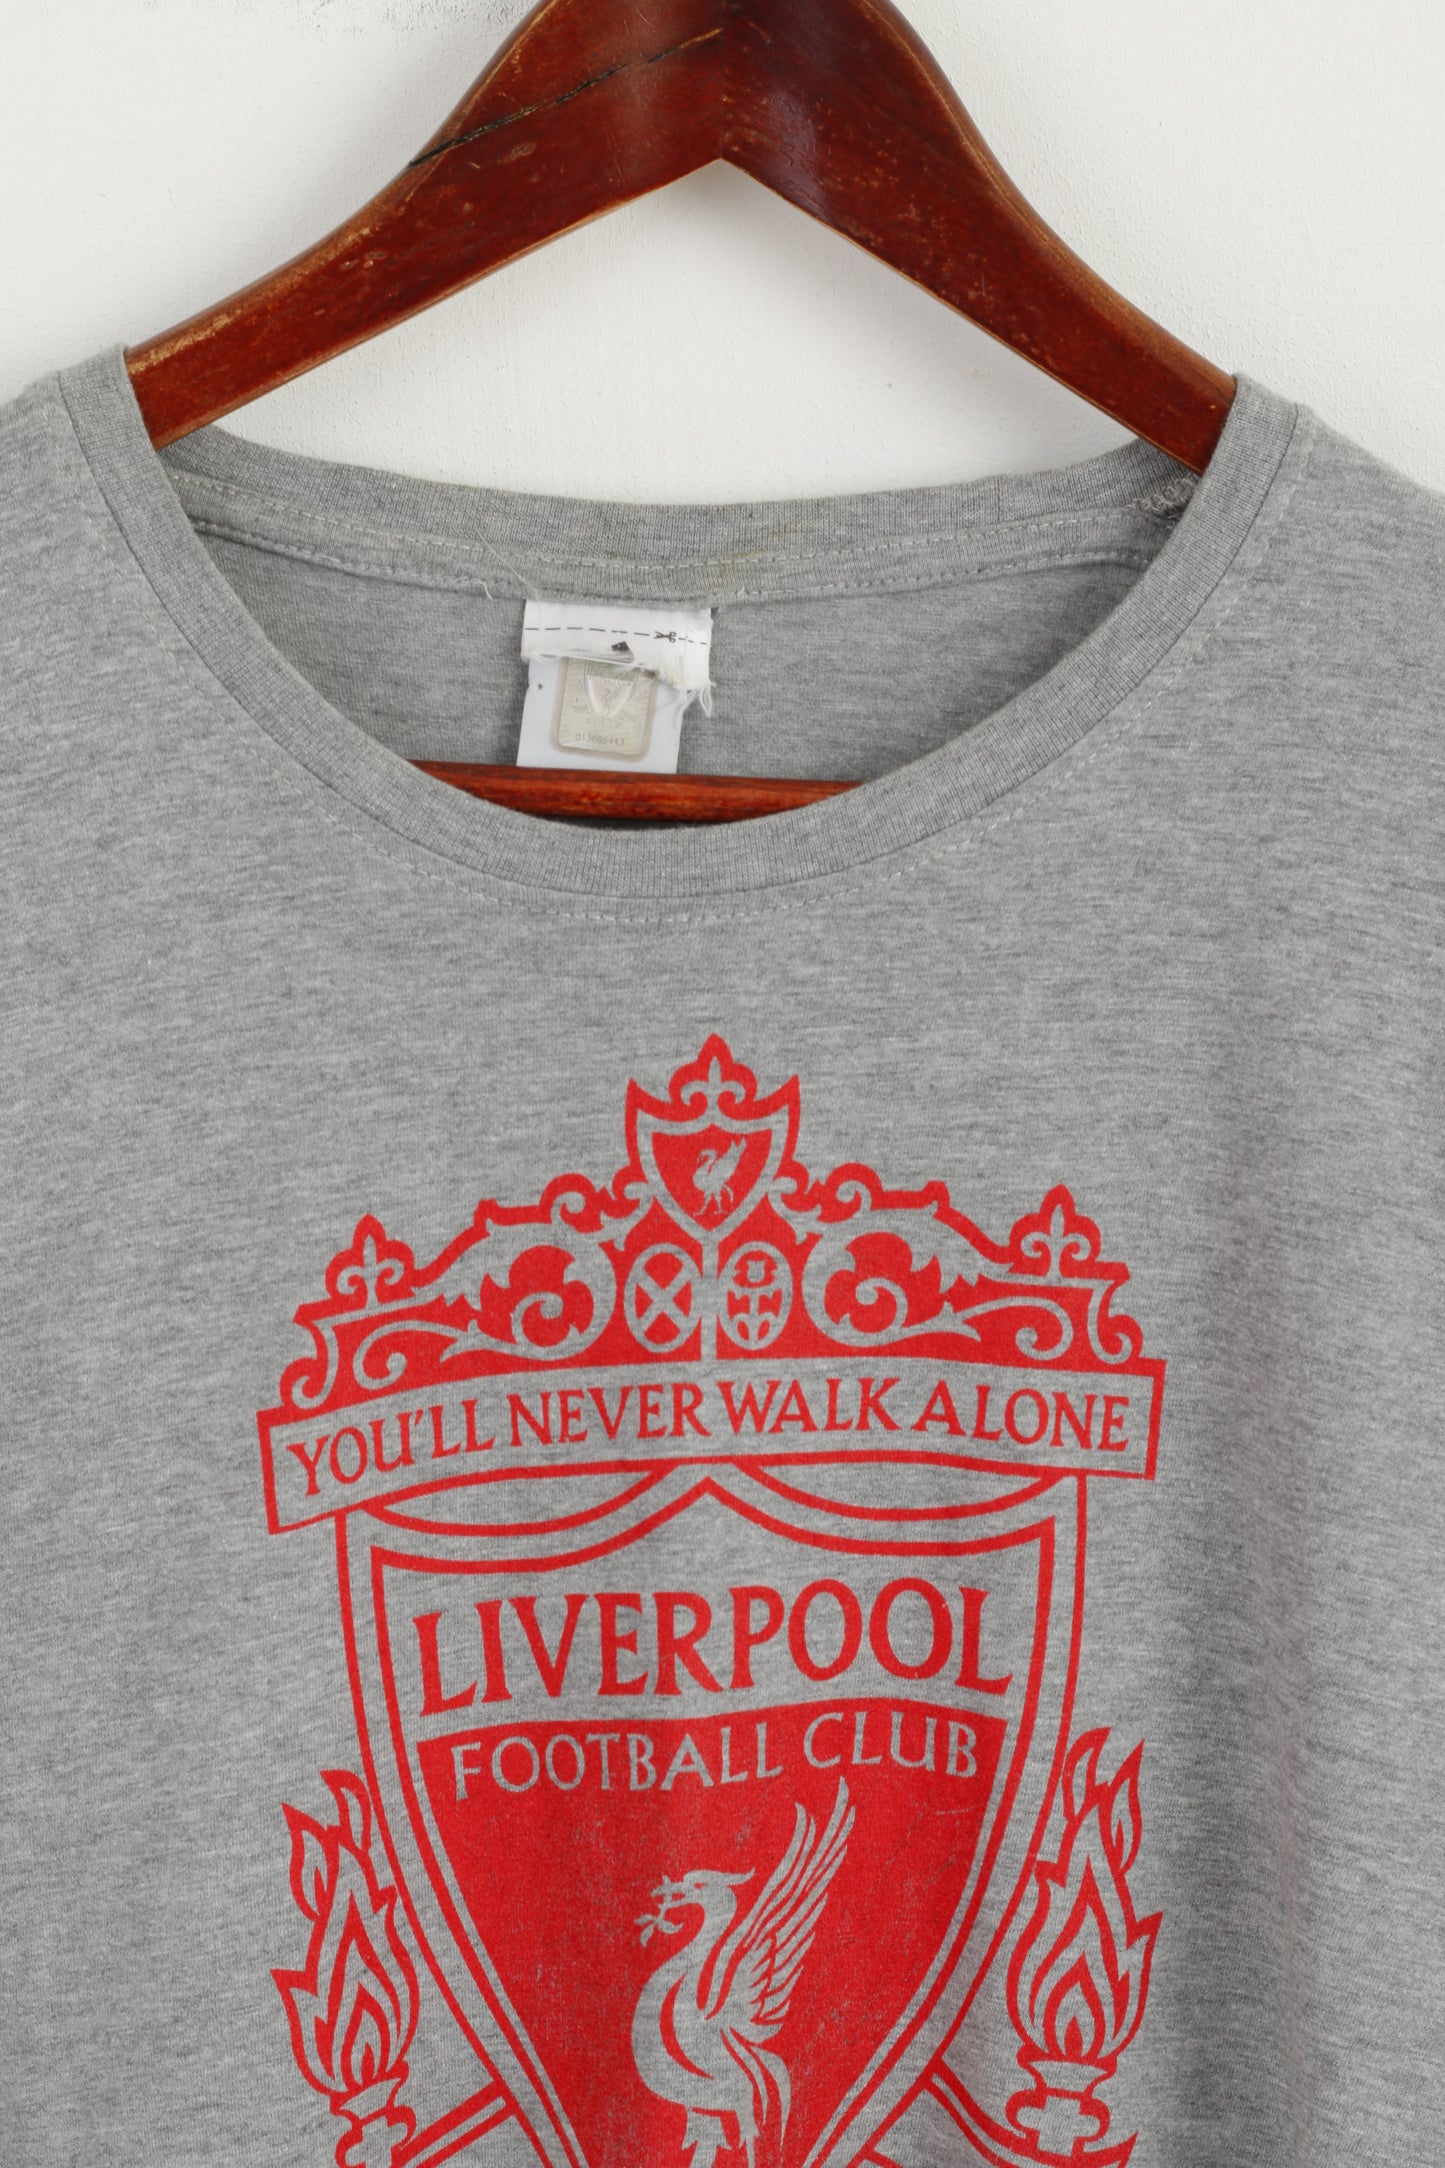 Maglietta Adidas da uomo M. Maglietta a maniche corte in cotone con grafica Liverpool Football